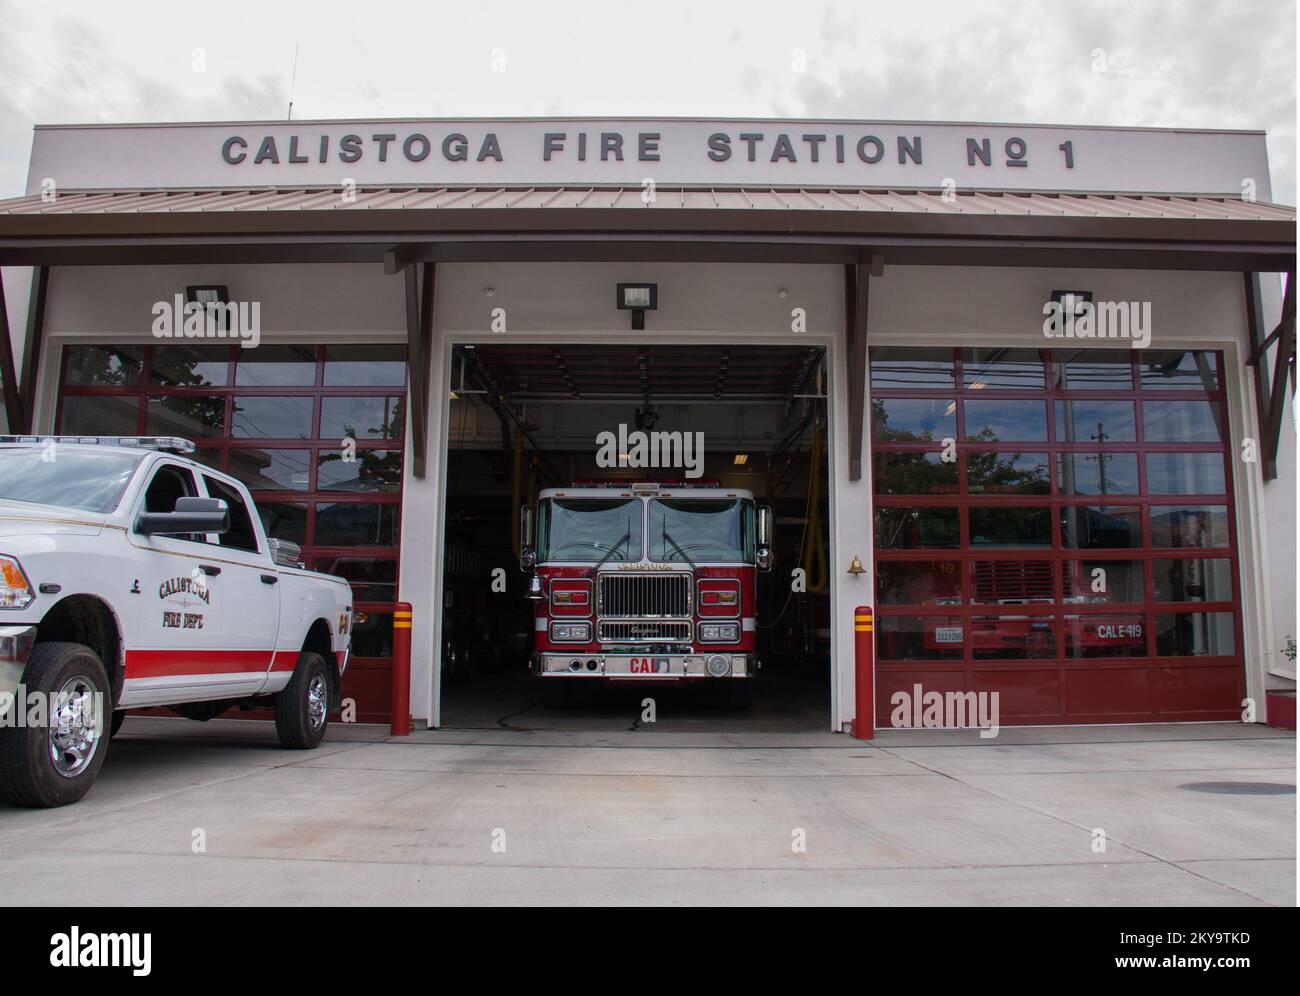 Napa, Kalifornien, 29. August 2014 die Feuerwache in Calistoga, Kalifornien, erhielt von den Bauinspektoren einen Gesundheitsnachweis, nachdem die Region am 24. August 2014 von einer 6,0-Größenordnung erschüttert wurde. Vor einigen Jahren wurde das Gebäude mit Hilfe eines Zuschusses der FEMA zur Abwehr von Erdbeben nachgerüstet, um die Widerstandsfähigkeit gegenüber zukünftigen Erdbeben zu verbessern. Fotos zu Katastrophen- und Notfallmanagementprogrammen, Aktivitäten und Beamten Stockfoto